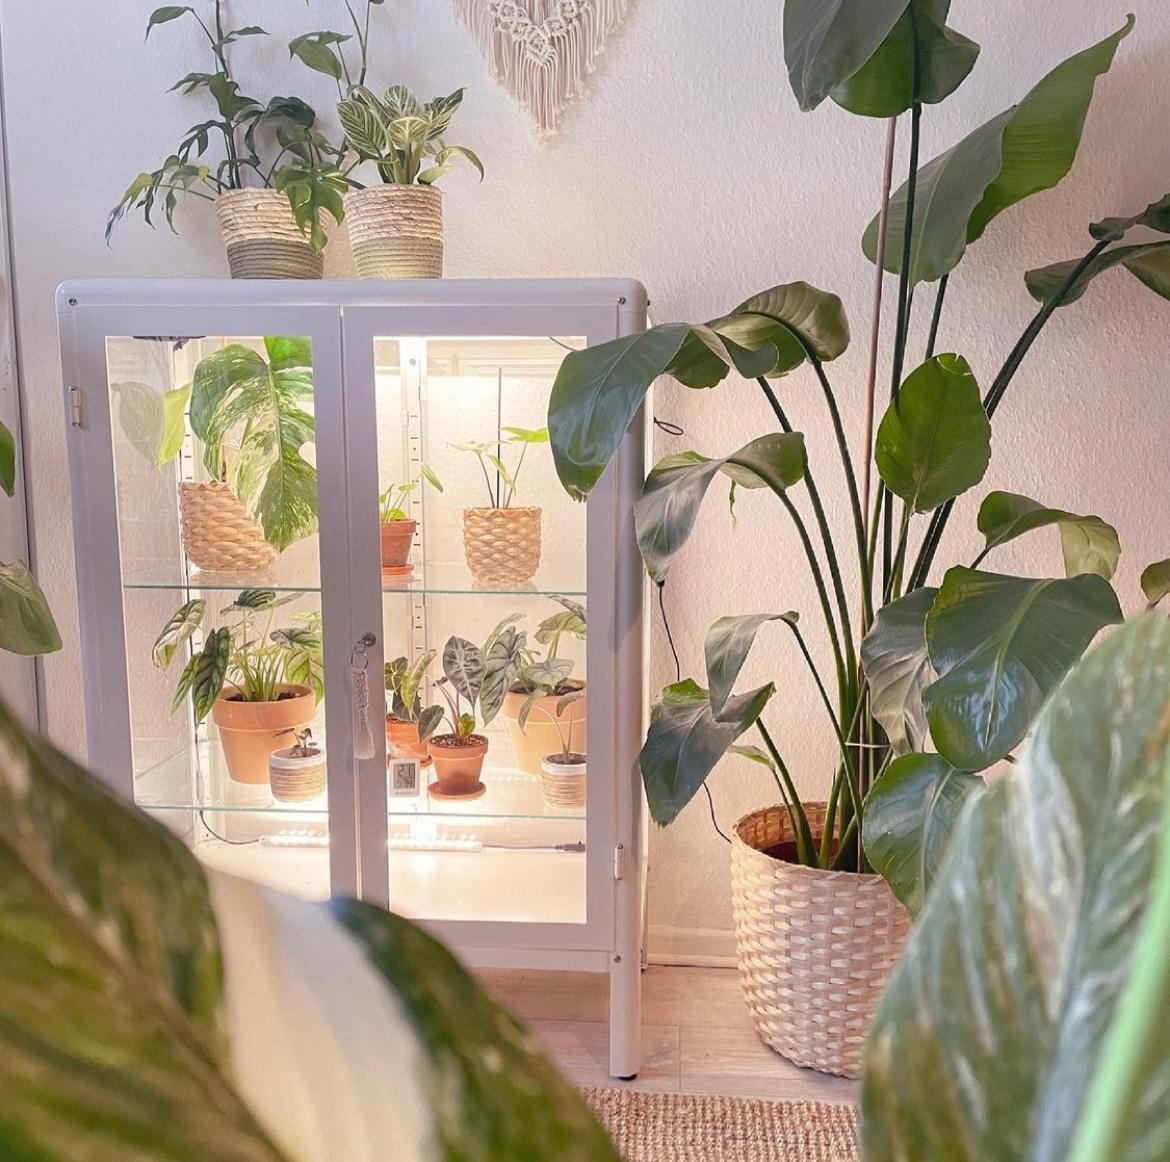 Pflanzenkindergarten.
#pflanzen #plants #plantmom #indoorgreemhouse #greenhouse #gewächshaus #livingroom #vitrinie